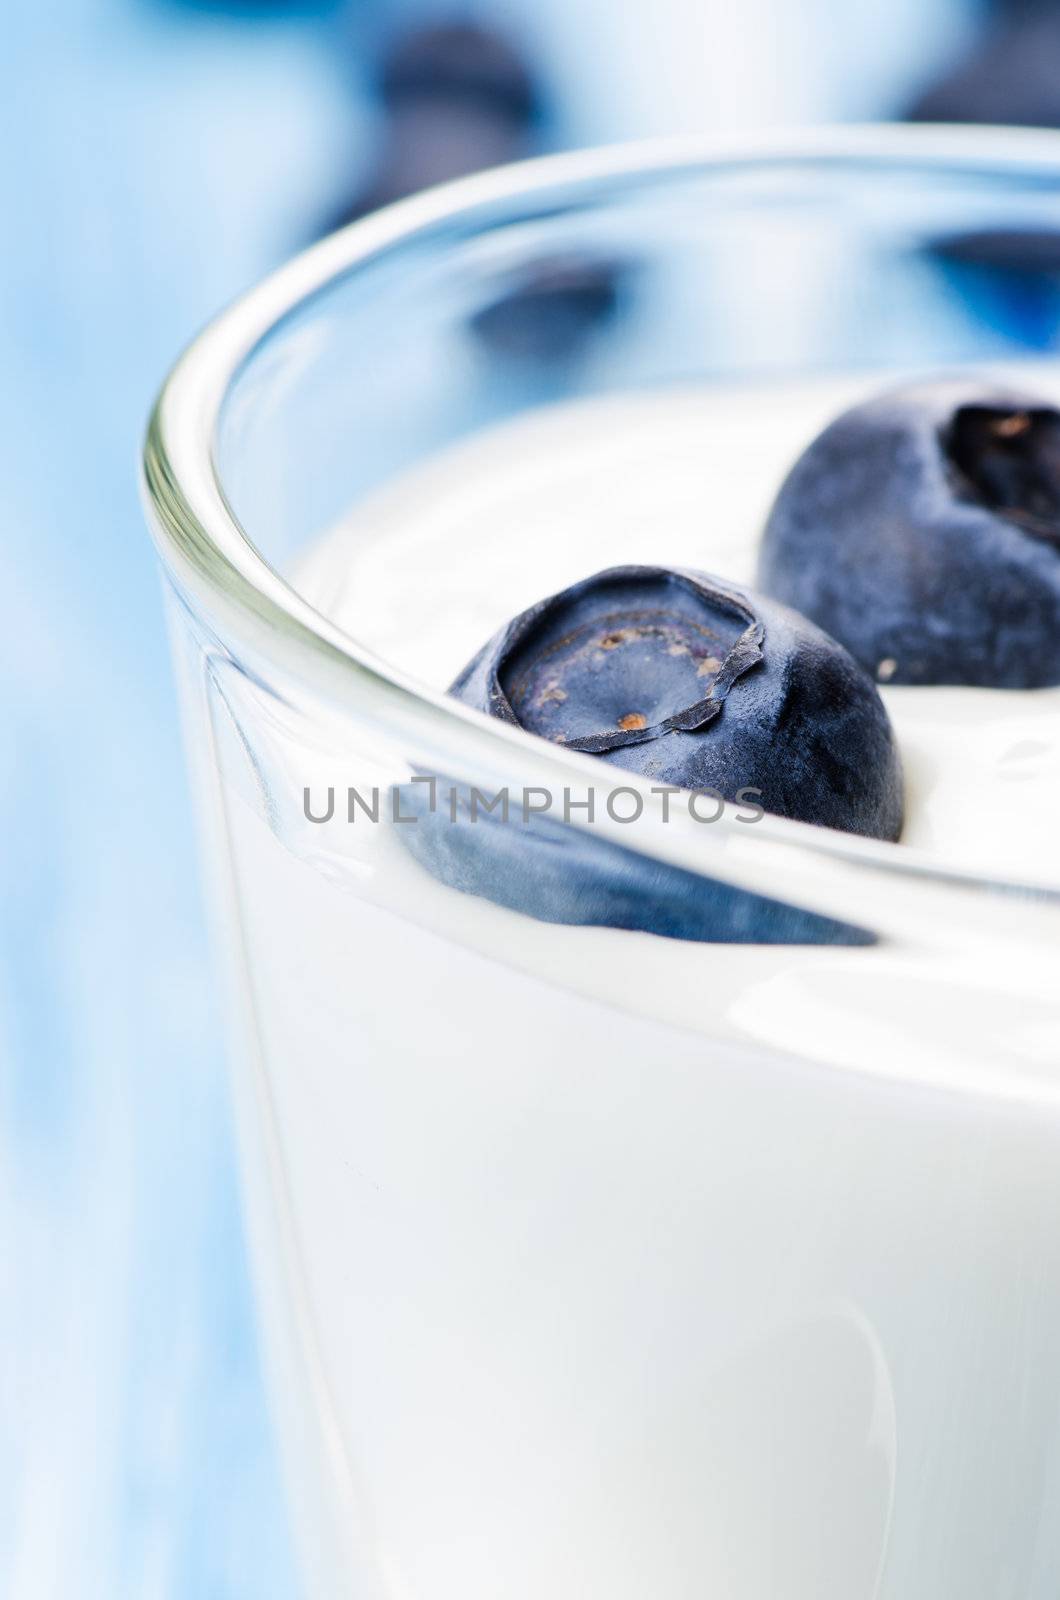 Blueberry yogurt on blue background close up